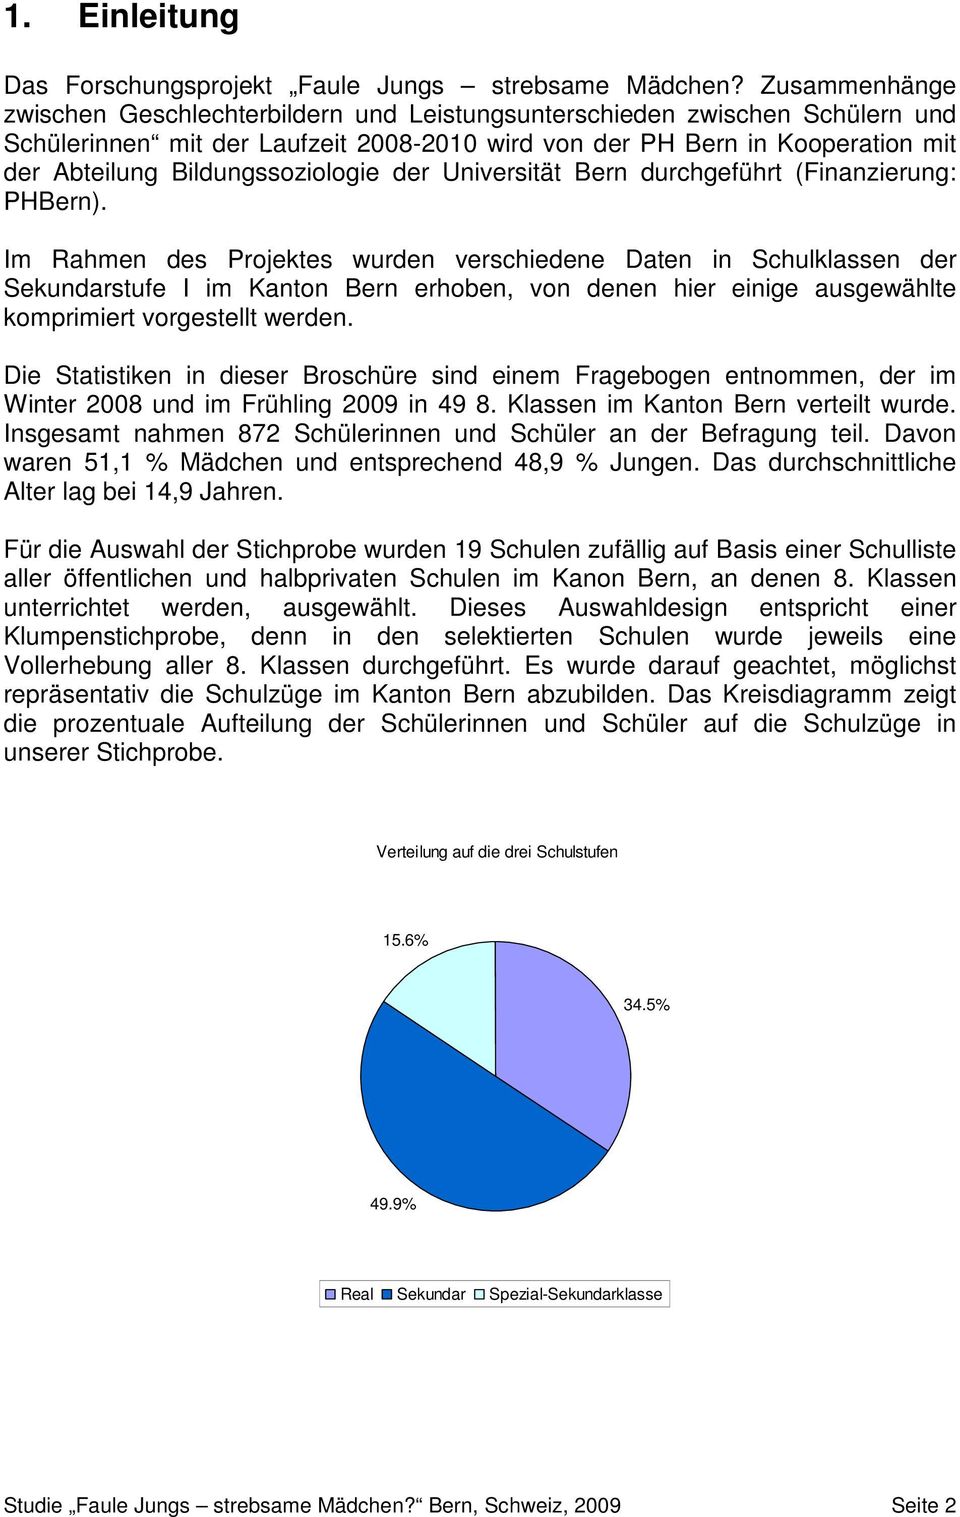 Bildungssoziologie der Universität Bern durchgeführt (Finanzierung: PHBern).